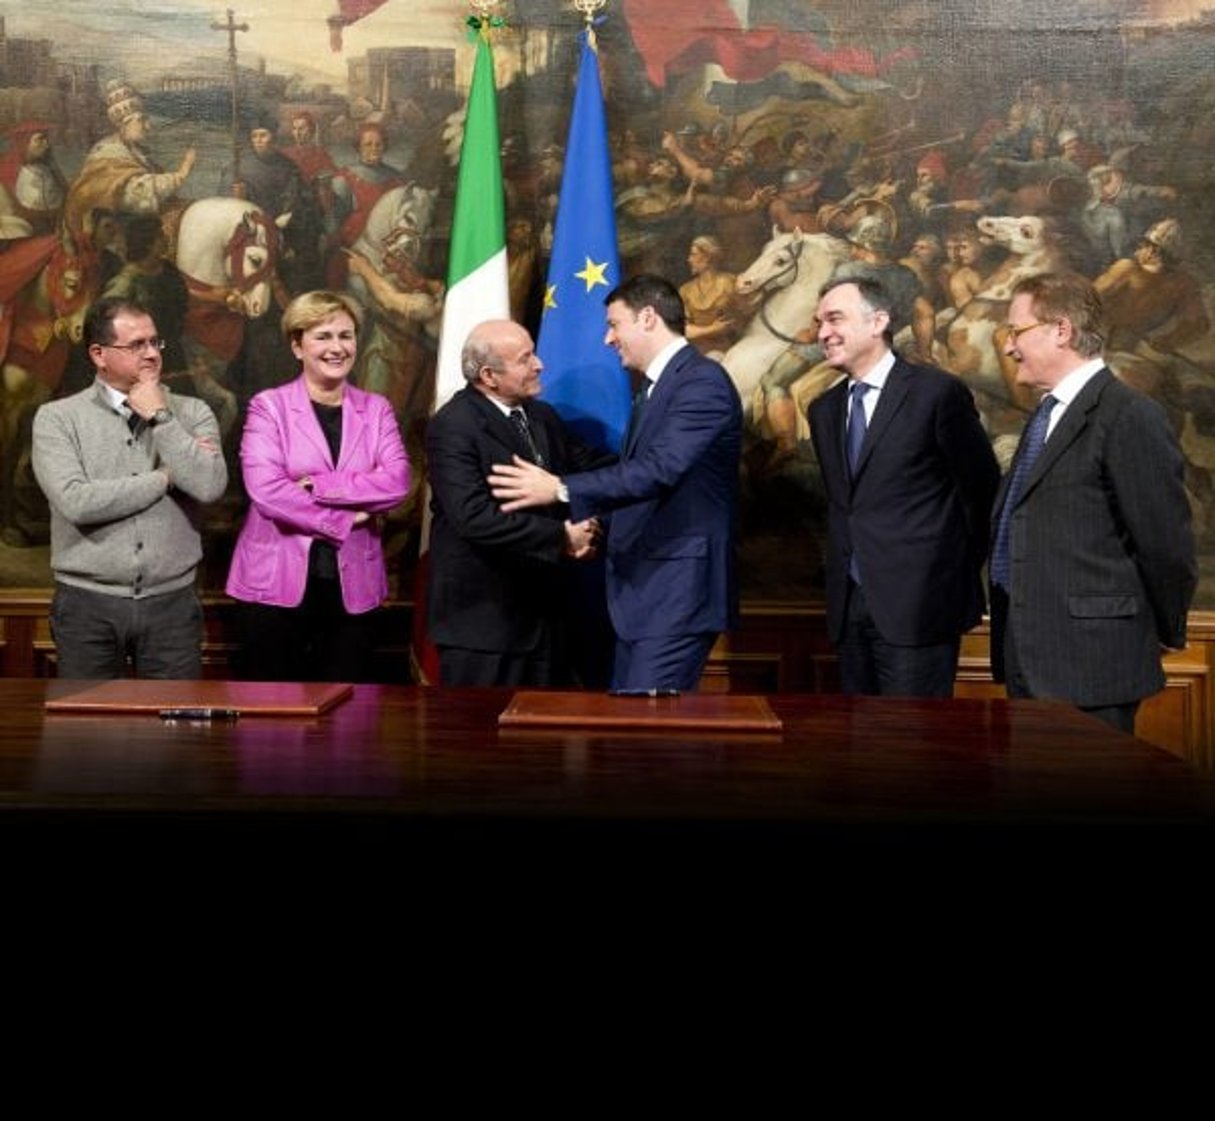 Le Premier ministre italien, Matteo Renzi, et Issad Rebrab officialisaient l’acquisition par Cevital des aciéries Lucchini au côté de l’ex-ministre du Développement économique, Federica Guidi, et du président de la région de Toscane, Enrico Rossi, au palais Chigi, à Rome (Italie), le 9 décembre 2014 © Imagoeconomica – Chigi